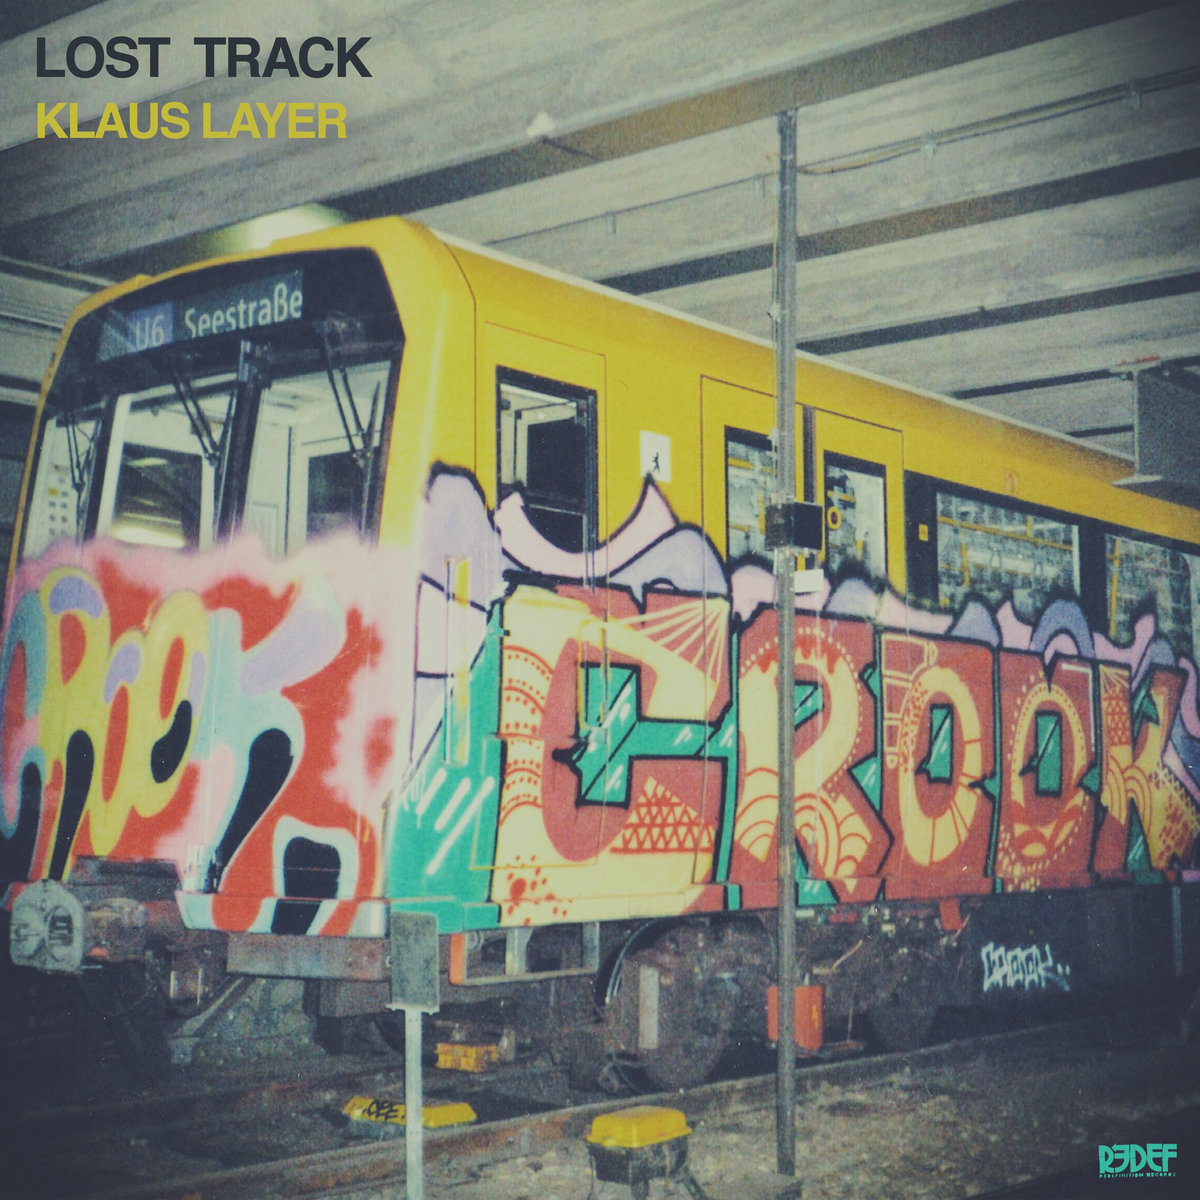 Lost_track